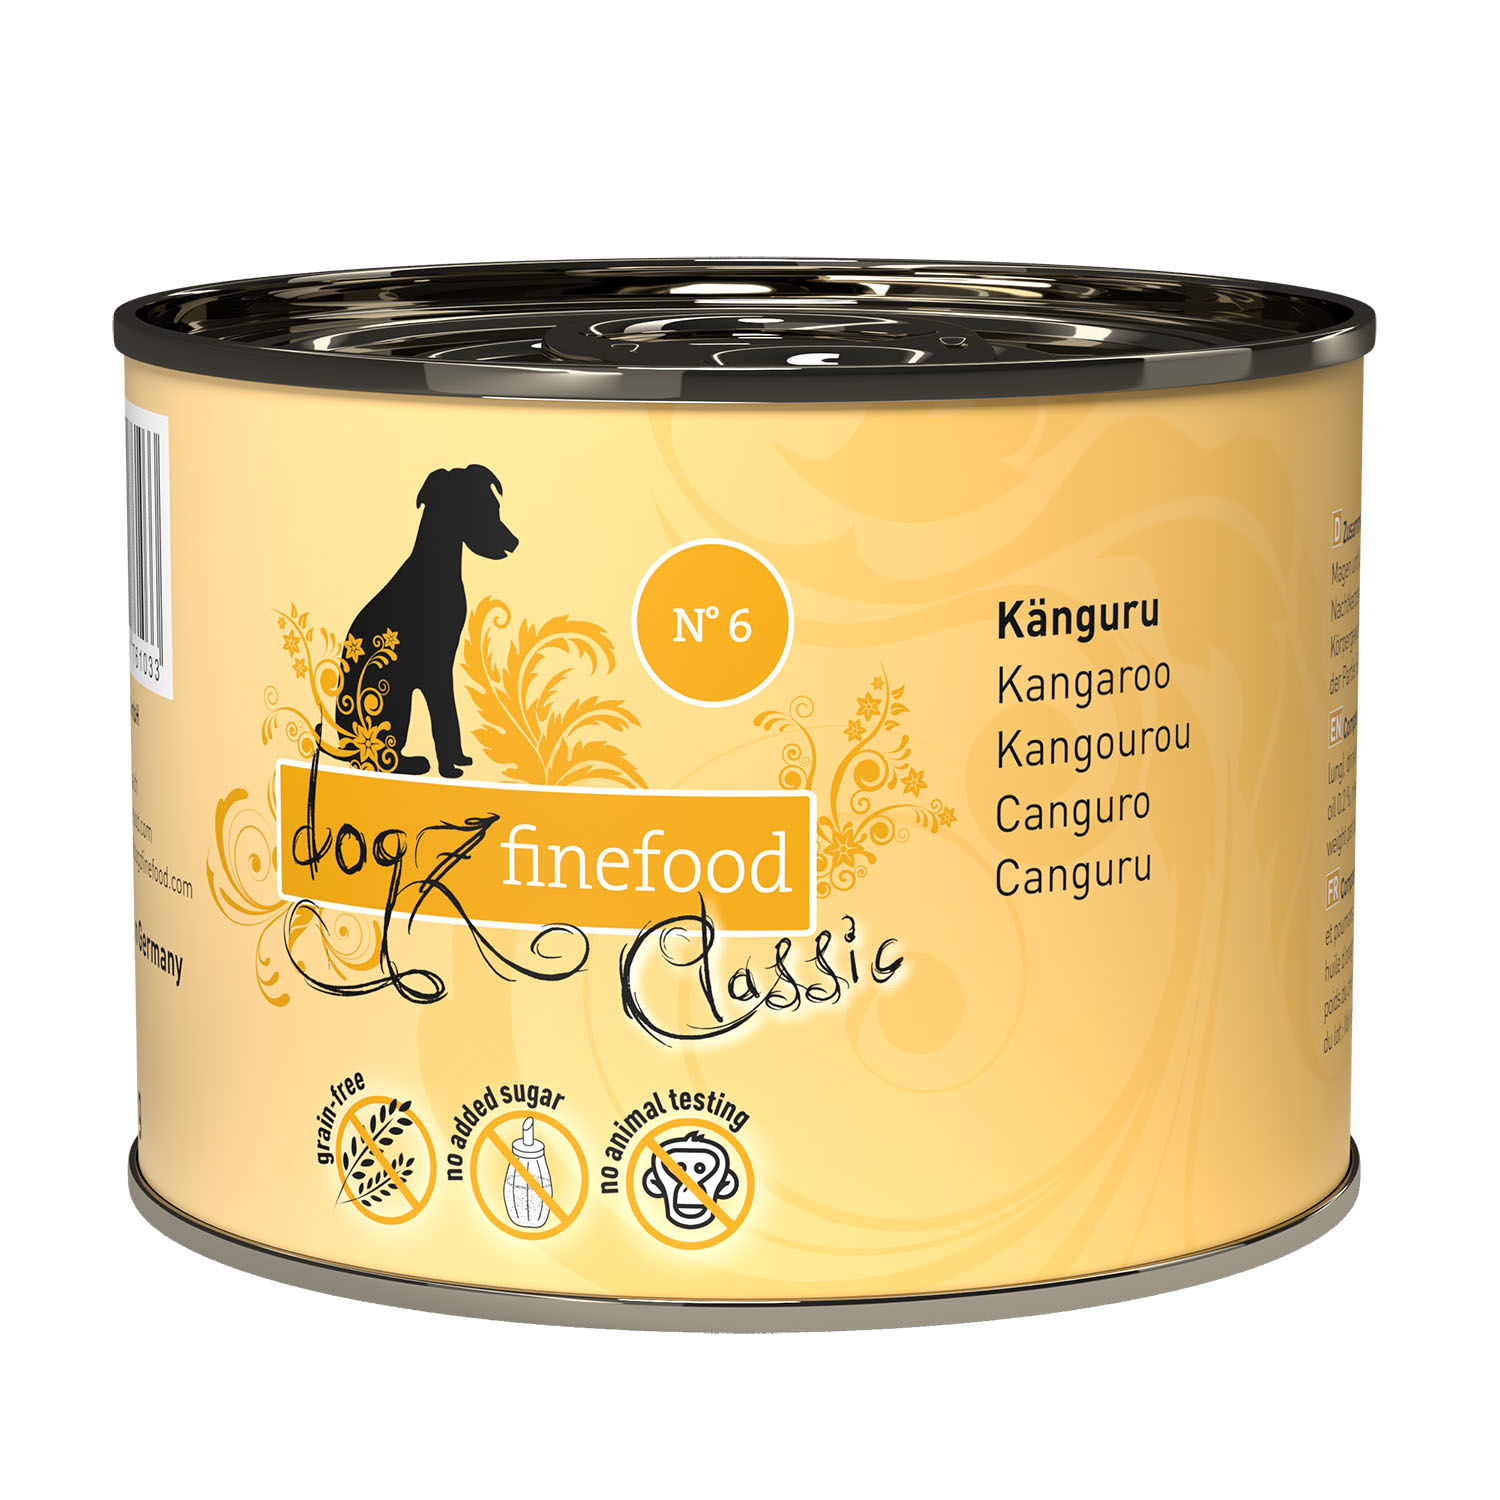 dogz finefood CLASSIC N° 6 - Känguru